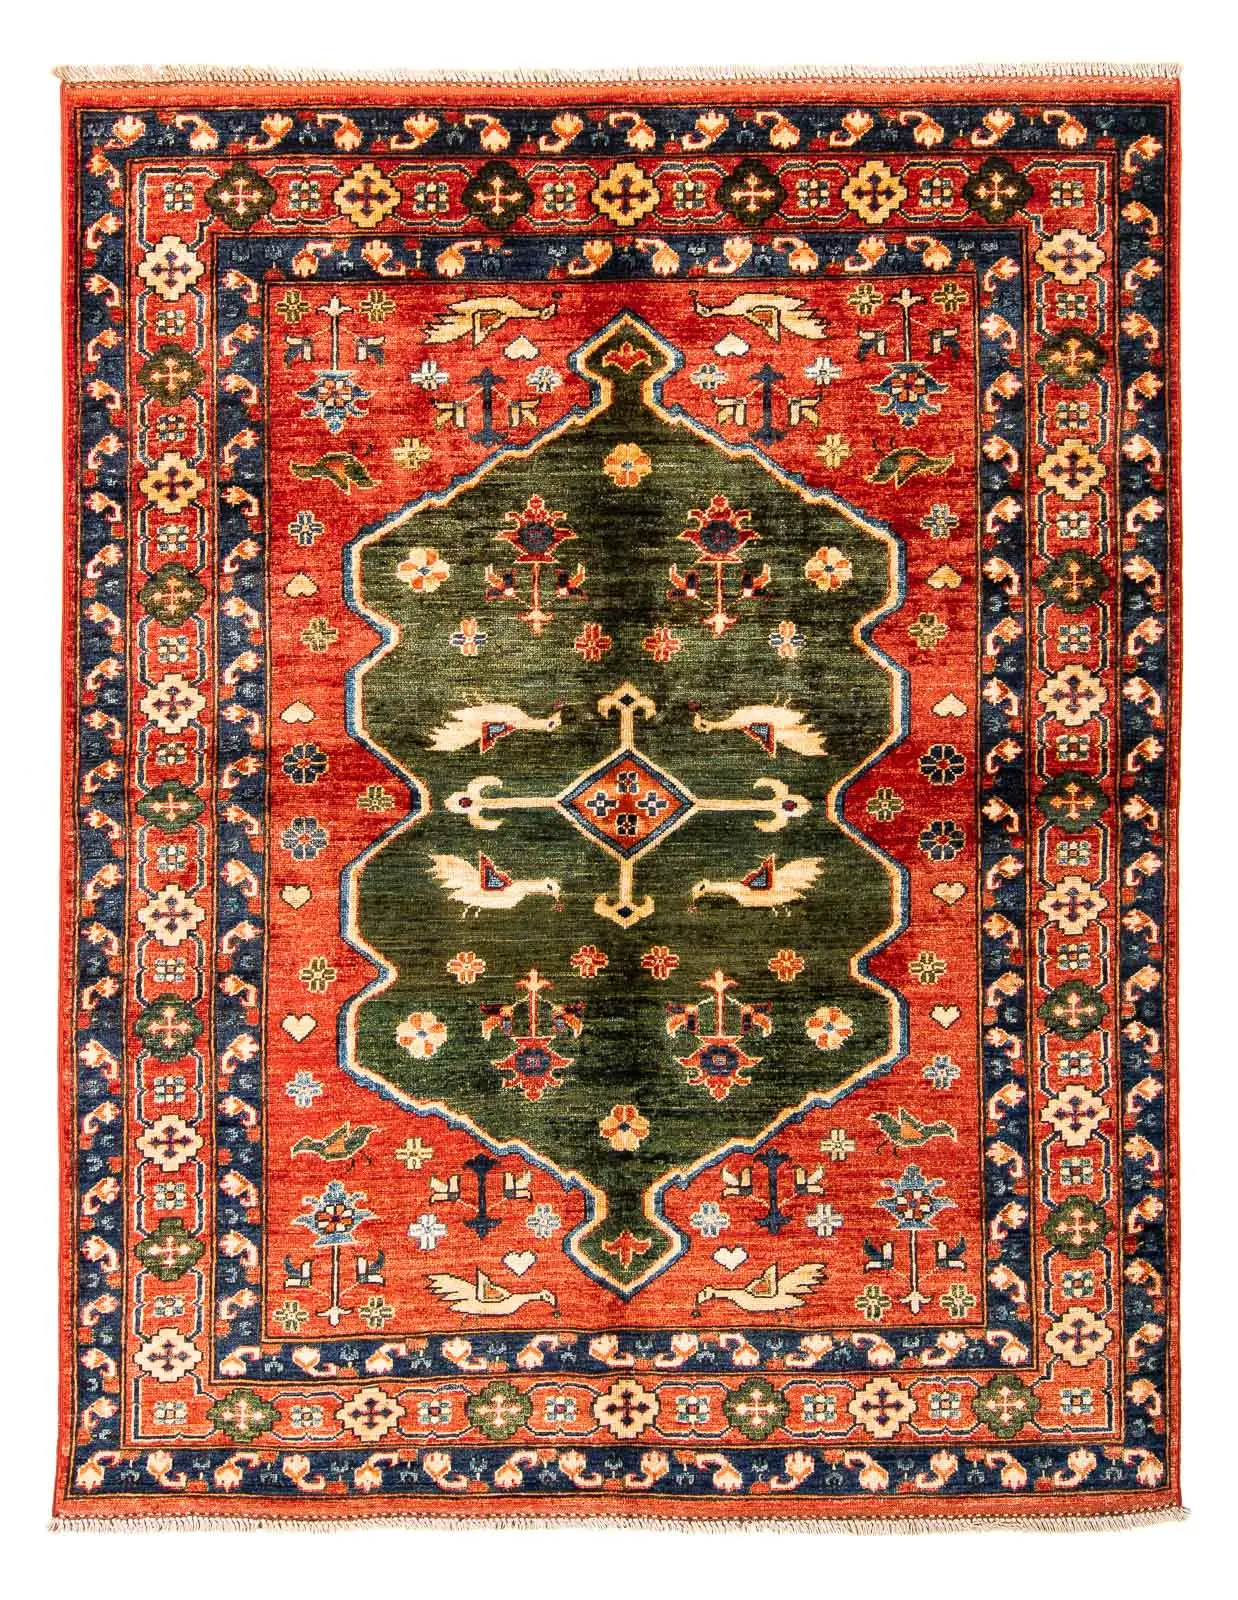 Afghan Teppich - 195 x 150 cm - rot